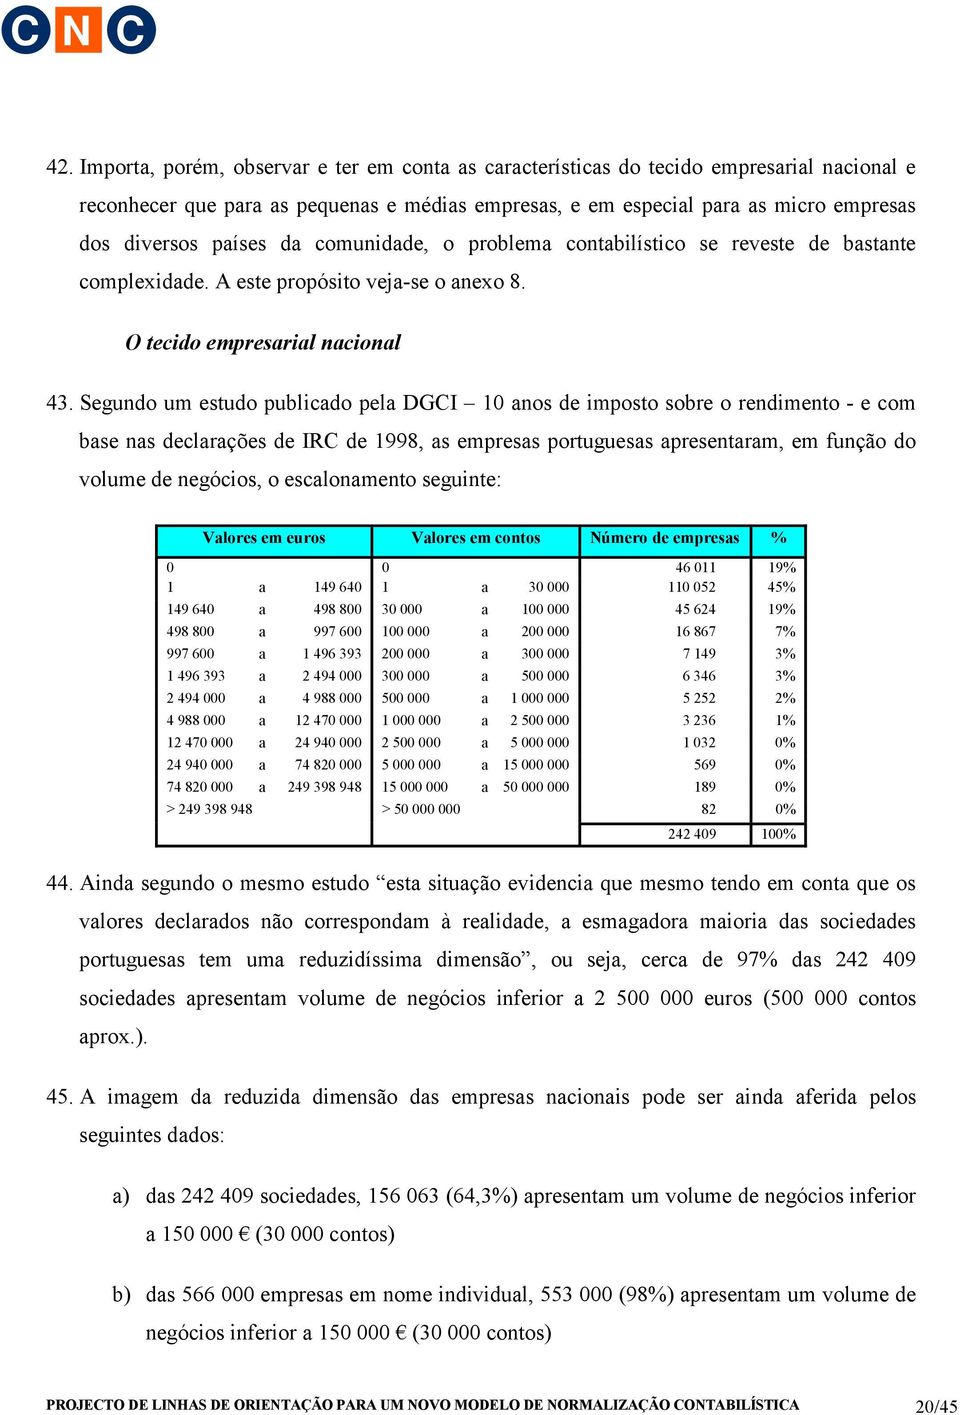 Segundo um estudo publicado pela DGCI 10 anos de imposto sobre o rendimento - e com base nas declarações de IRC de 1998, as empresas portuguesas apresentaram, em função do volume de negócios, o